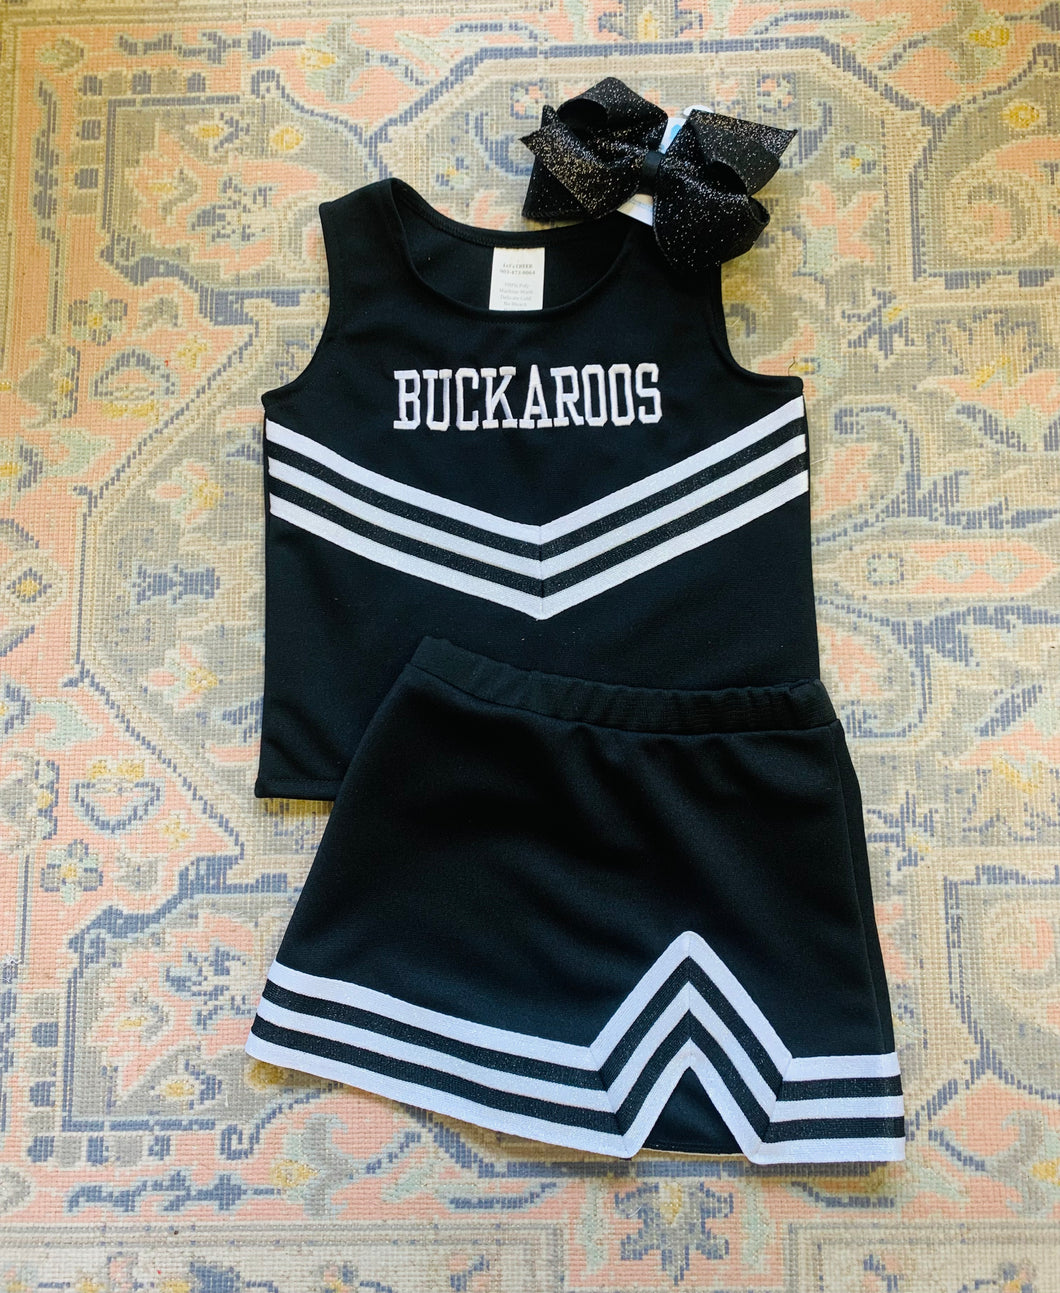 BUCKAROOS Cheer Uniform